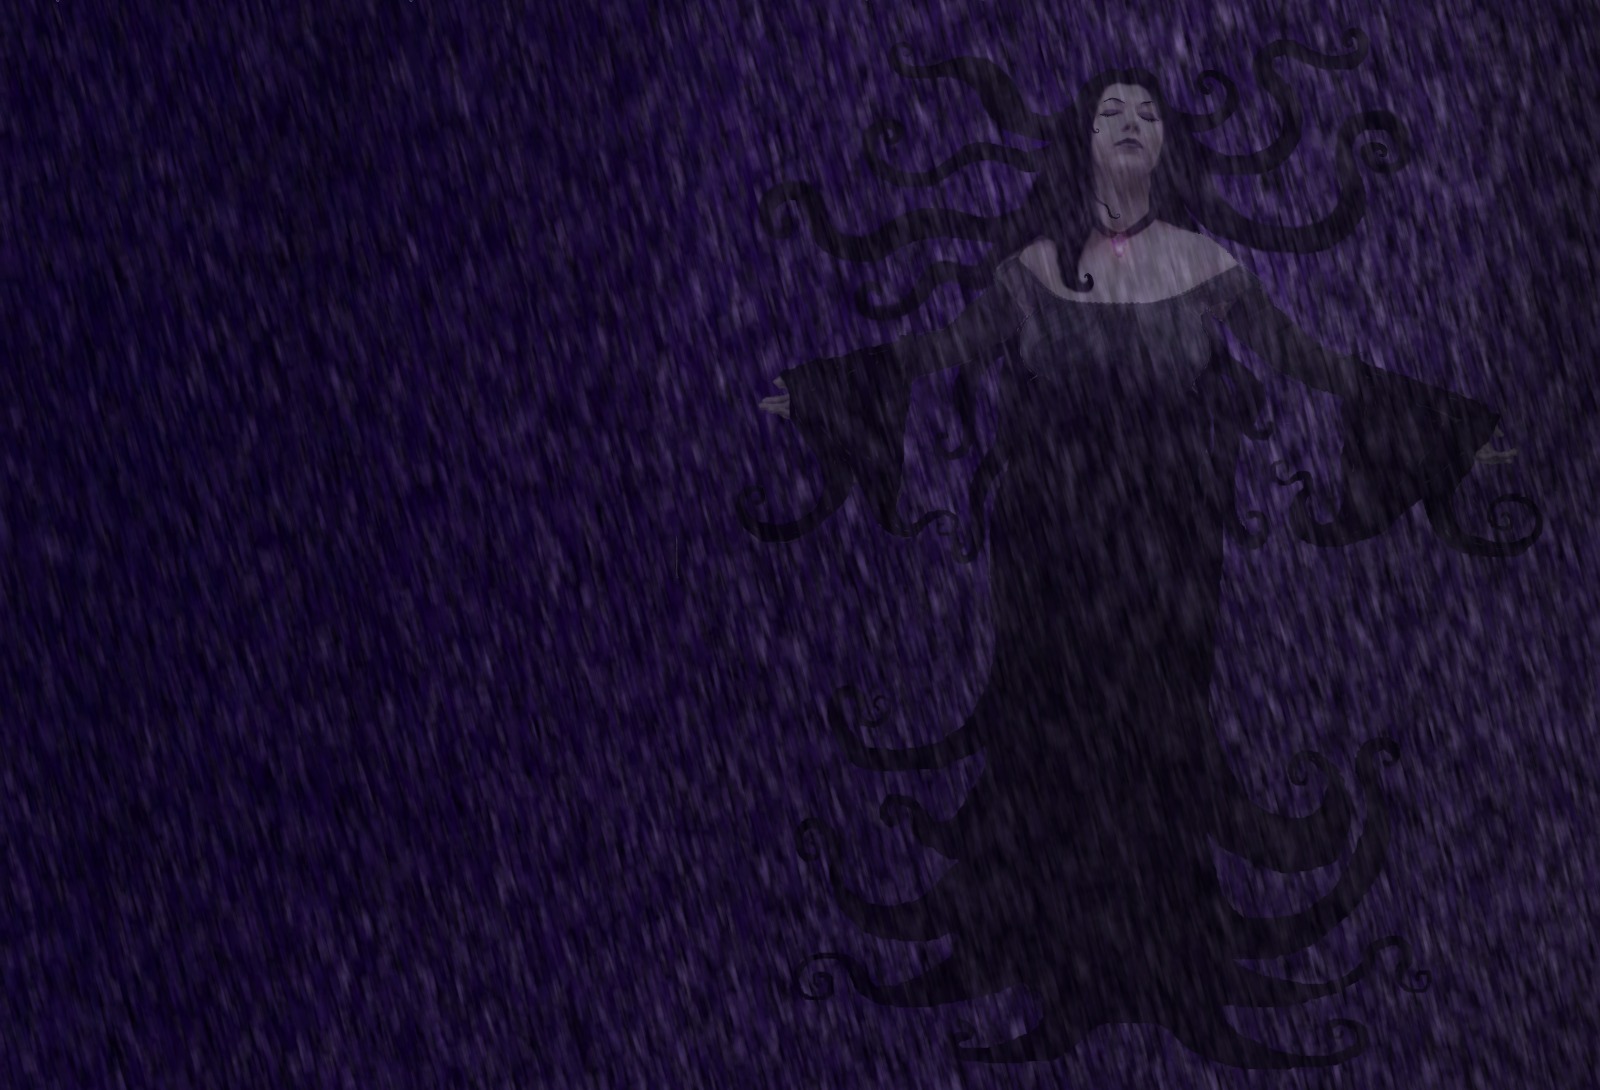 Dark Witch HD Wallpaper | Background Image